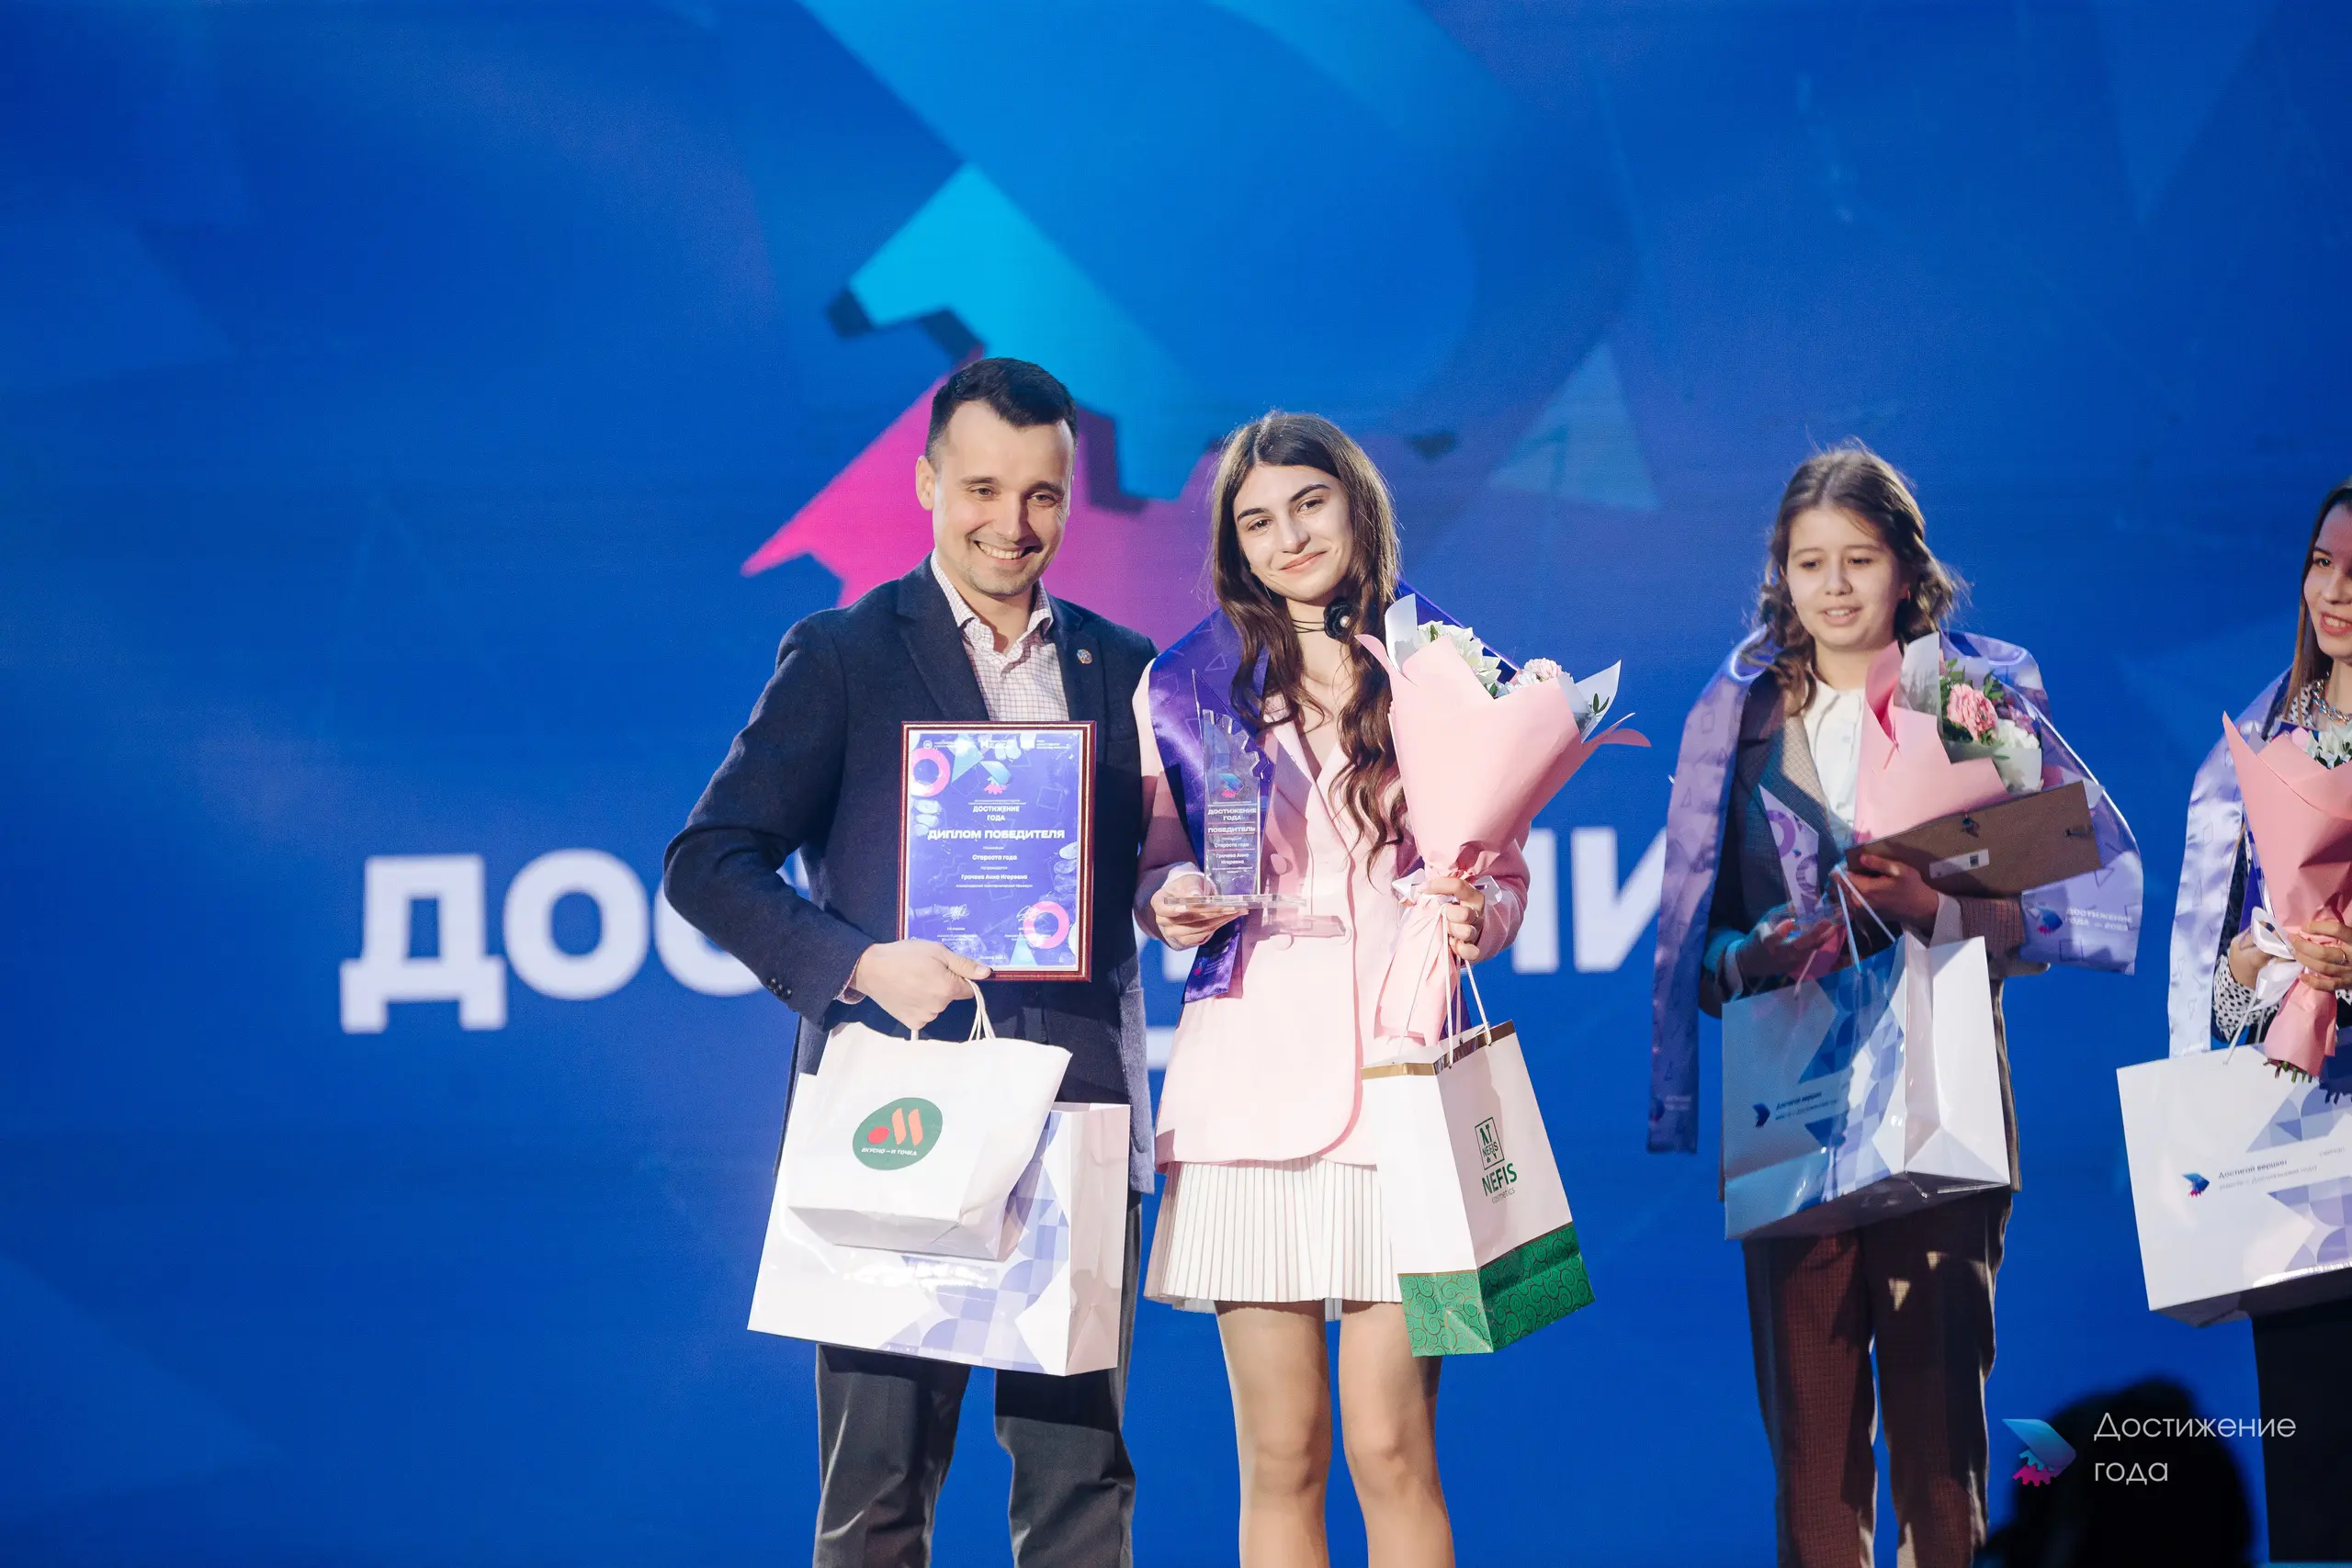 Победитель номинации в премии и конкурса Достижение года Лиги студентов Республики Татарстан региональной молодежной общественной организации, крупнейшем студенческом объединении Поволжья, основанной в 1996 году